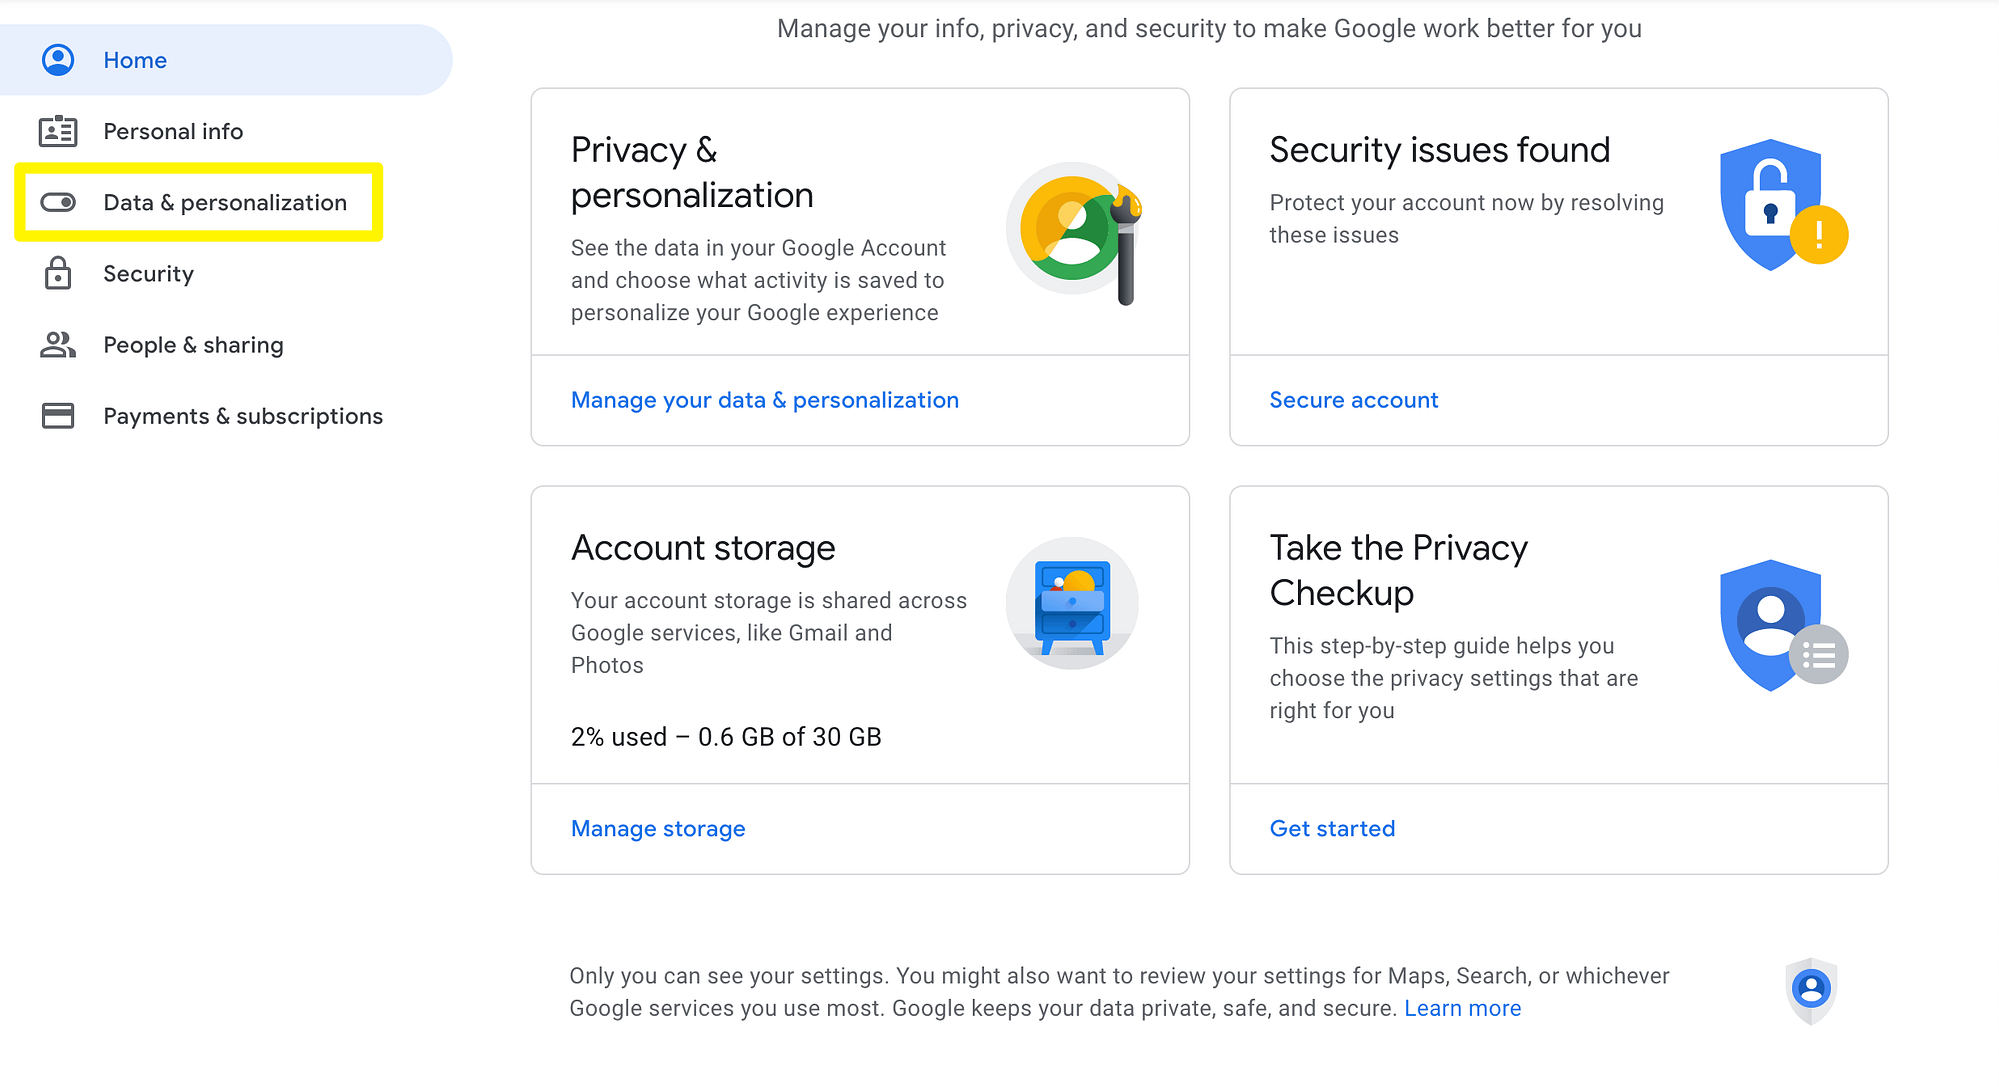 Google's Data & Personalization settings